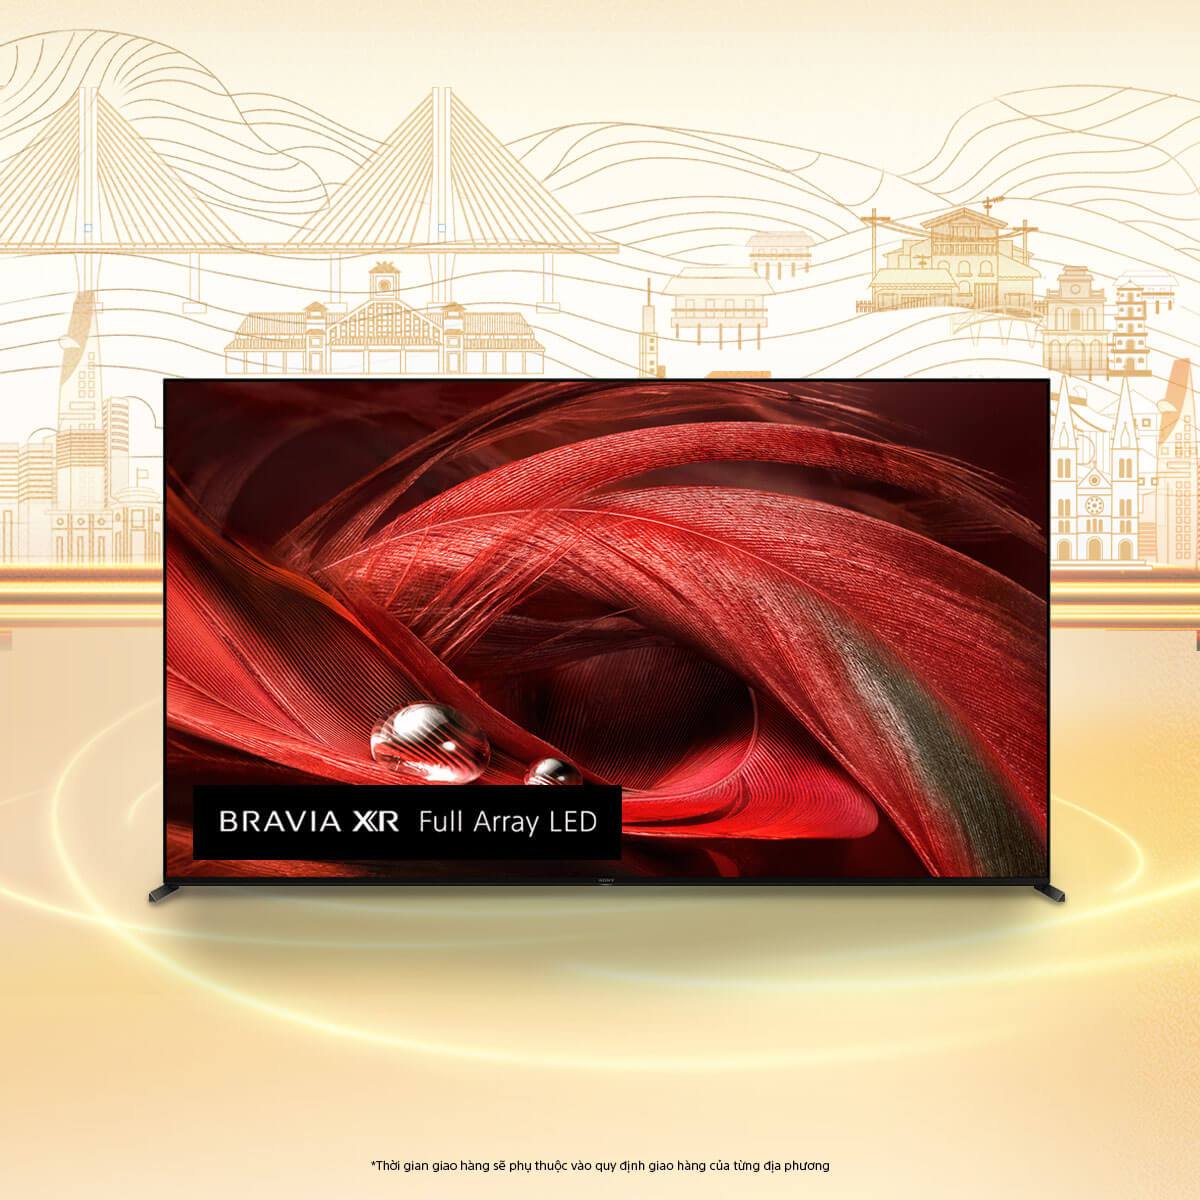 65X95J | BRAVIA XR | Full Array LED | 4K Ultra HD | Dải tần nhạy sáng cao (HDR) | Smart TV (Google TV)